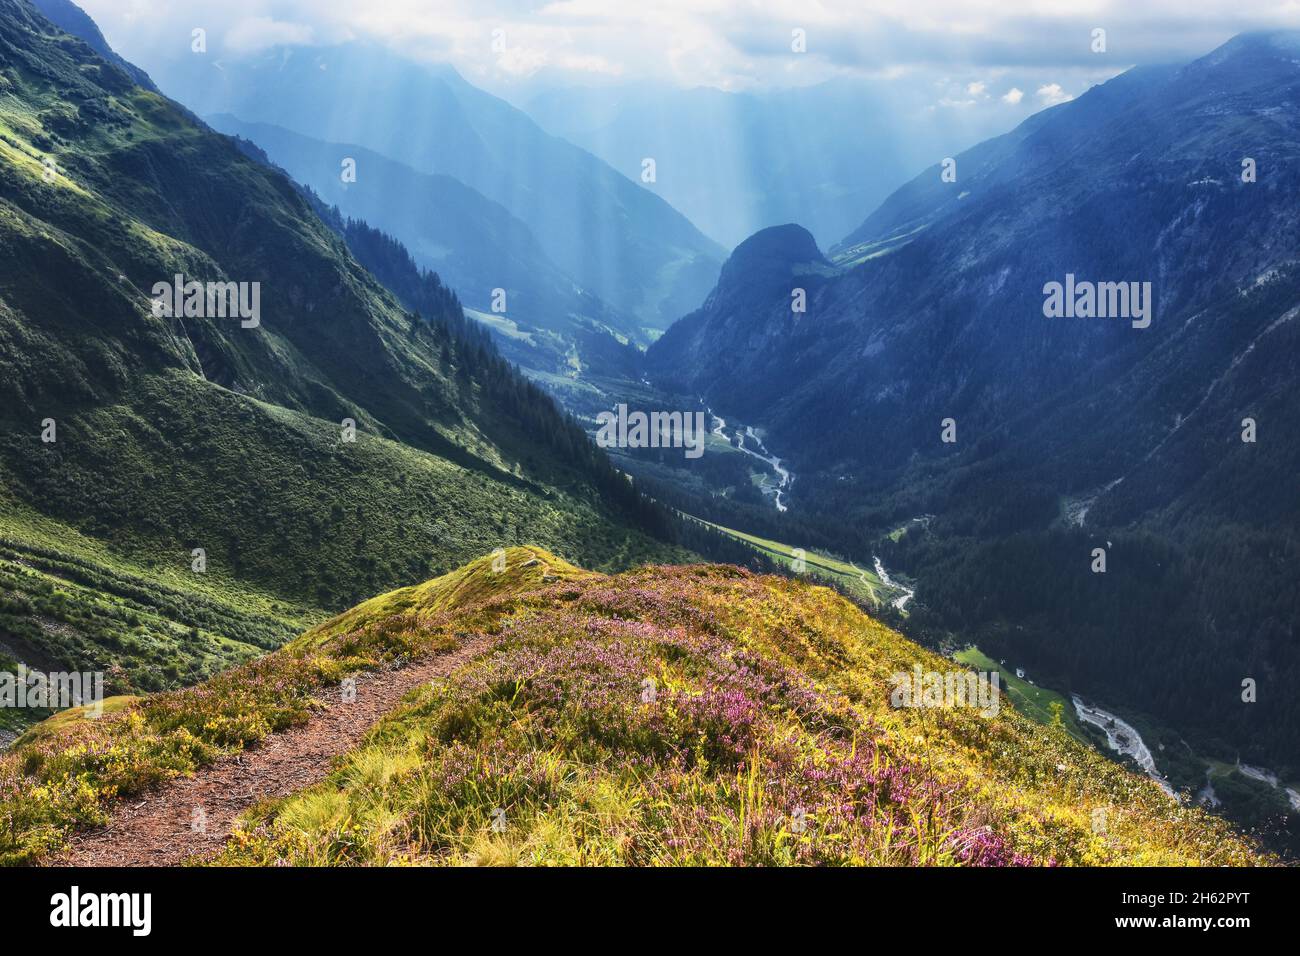 stimmungsvolle Atmosphäre in einer alpinen Berglandschaft im Sommer. Sonnenstrahlen brechen durch Wolken. maderanertal,glarner alpen,uri,schweiz,europa Stockfoto